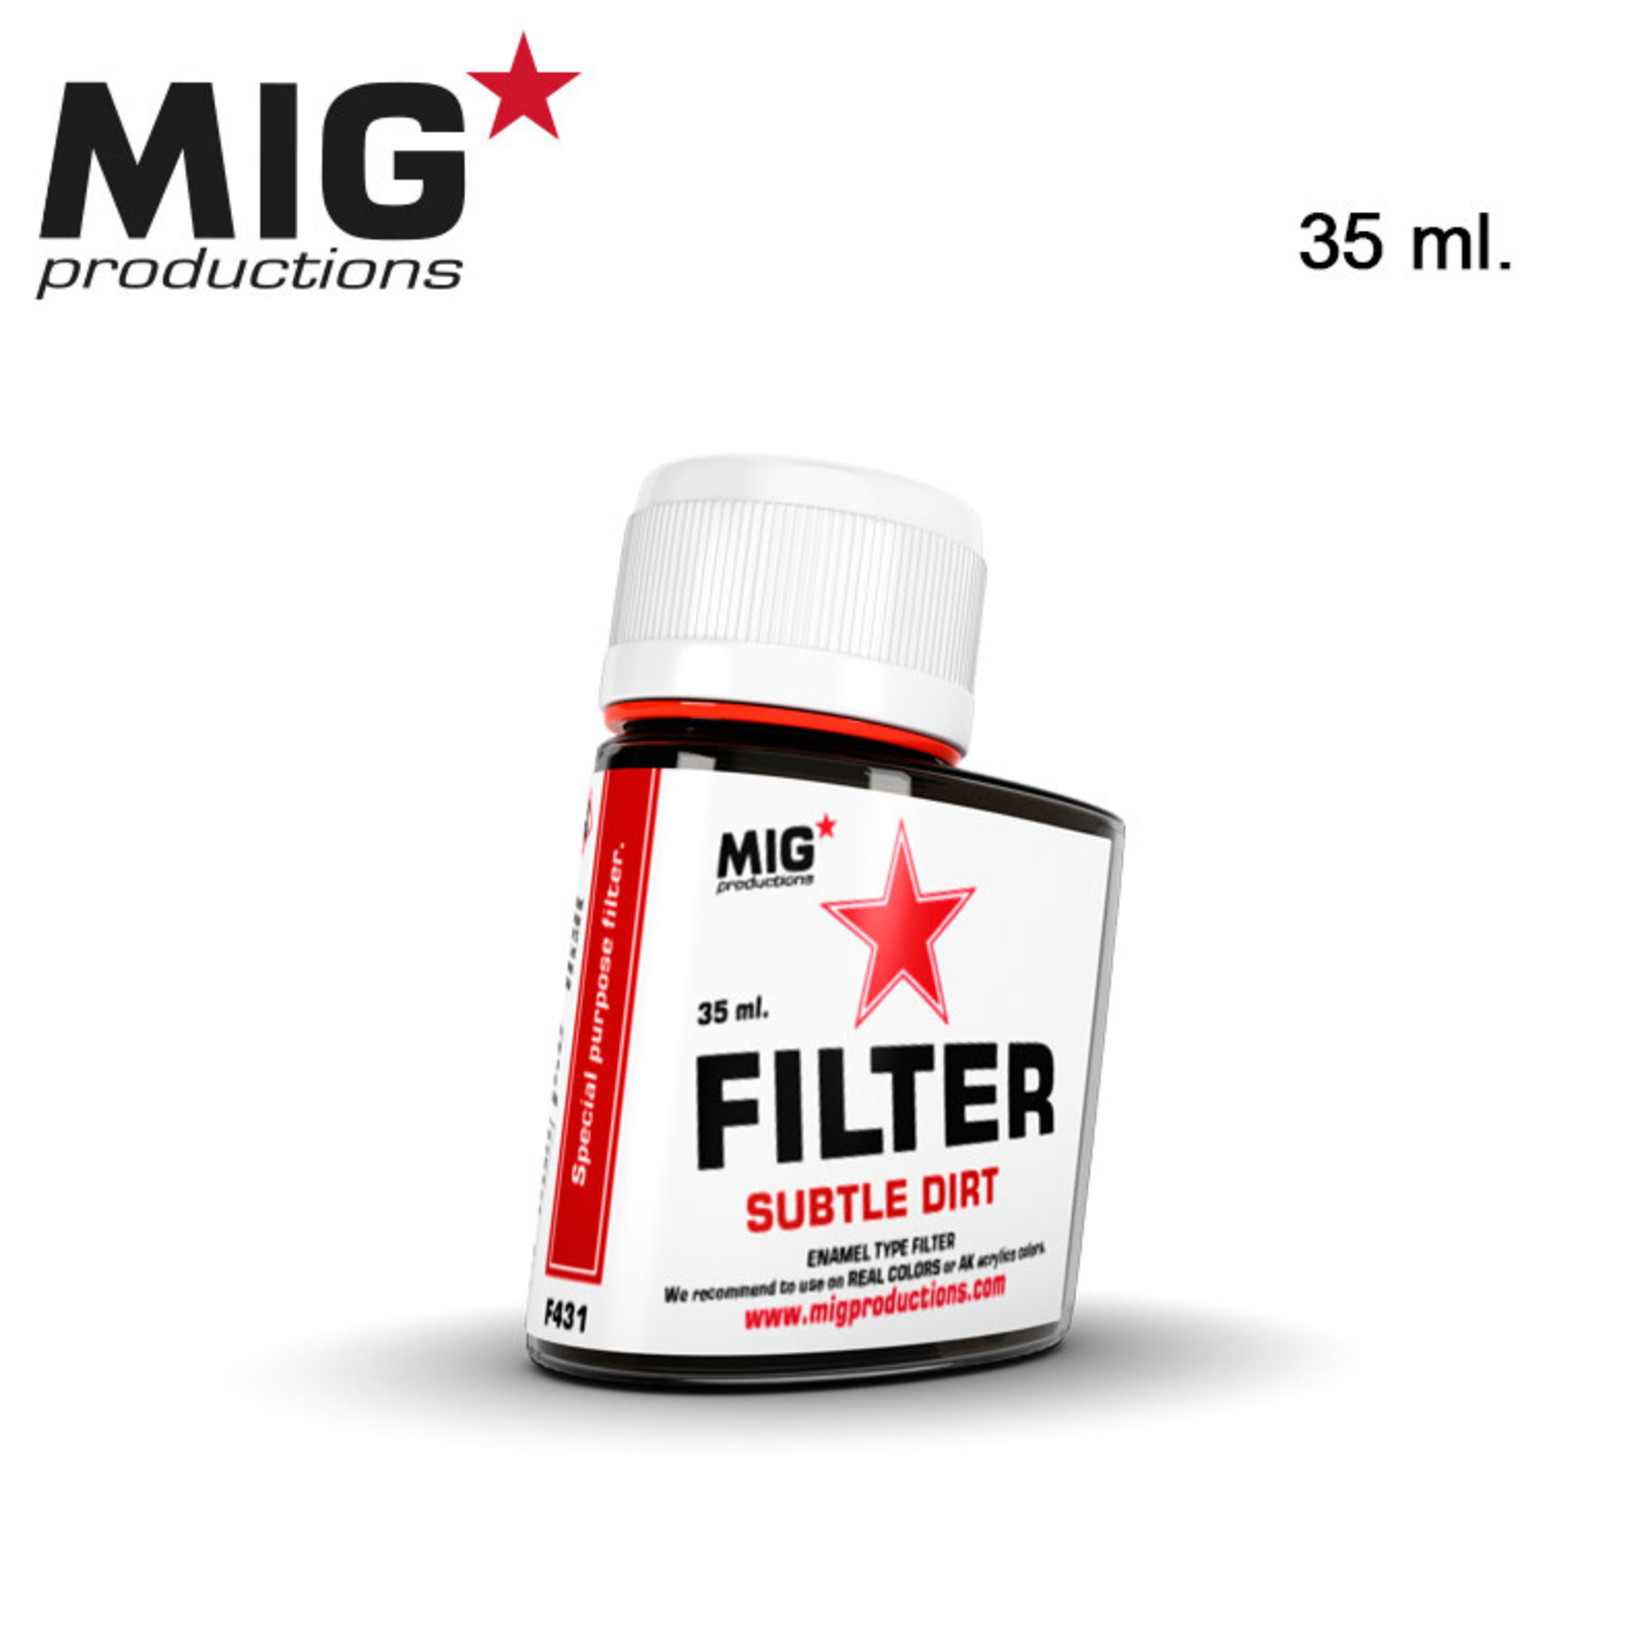 MIG Productions MIG Filter F-431 Subtle Dirt 35ml